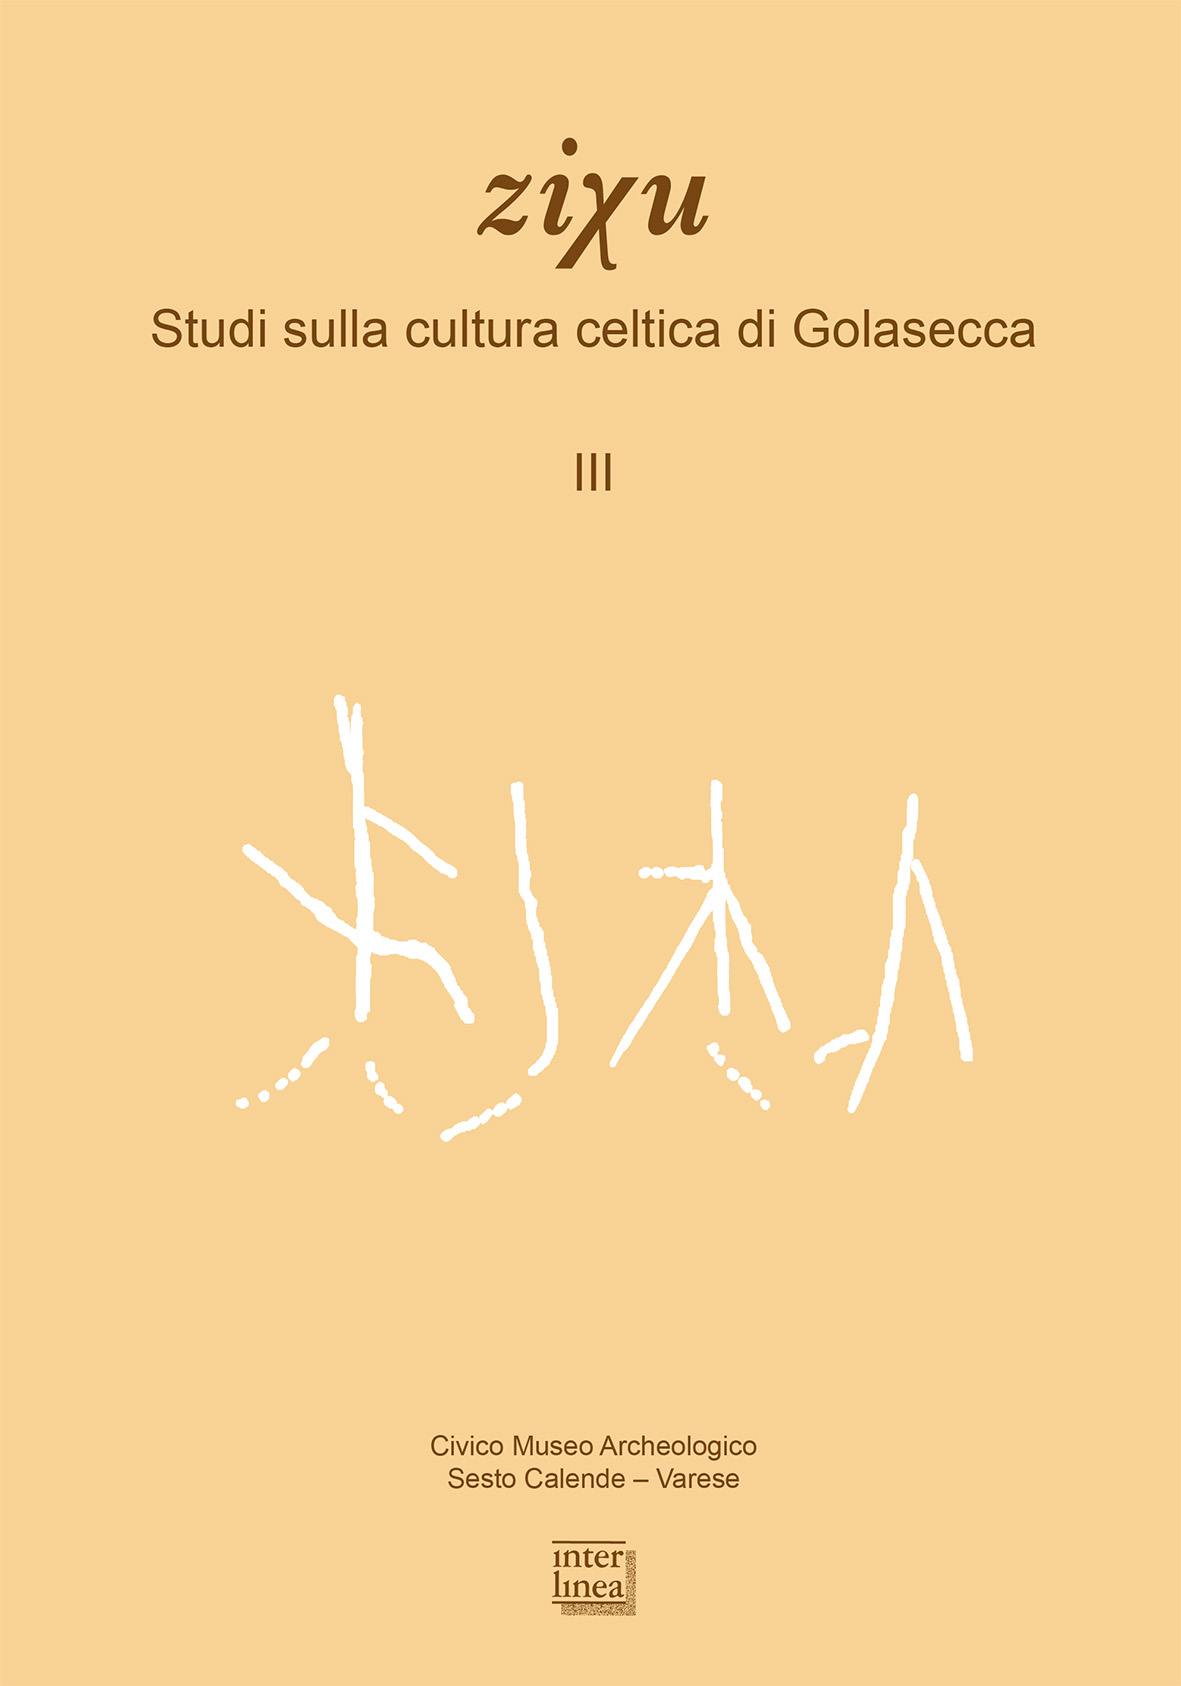 Article, Culture celto-liguri e celto-golasecchiane nel Pavese e nell'Alessandrino, Interlinea